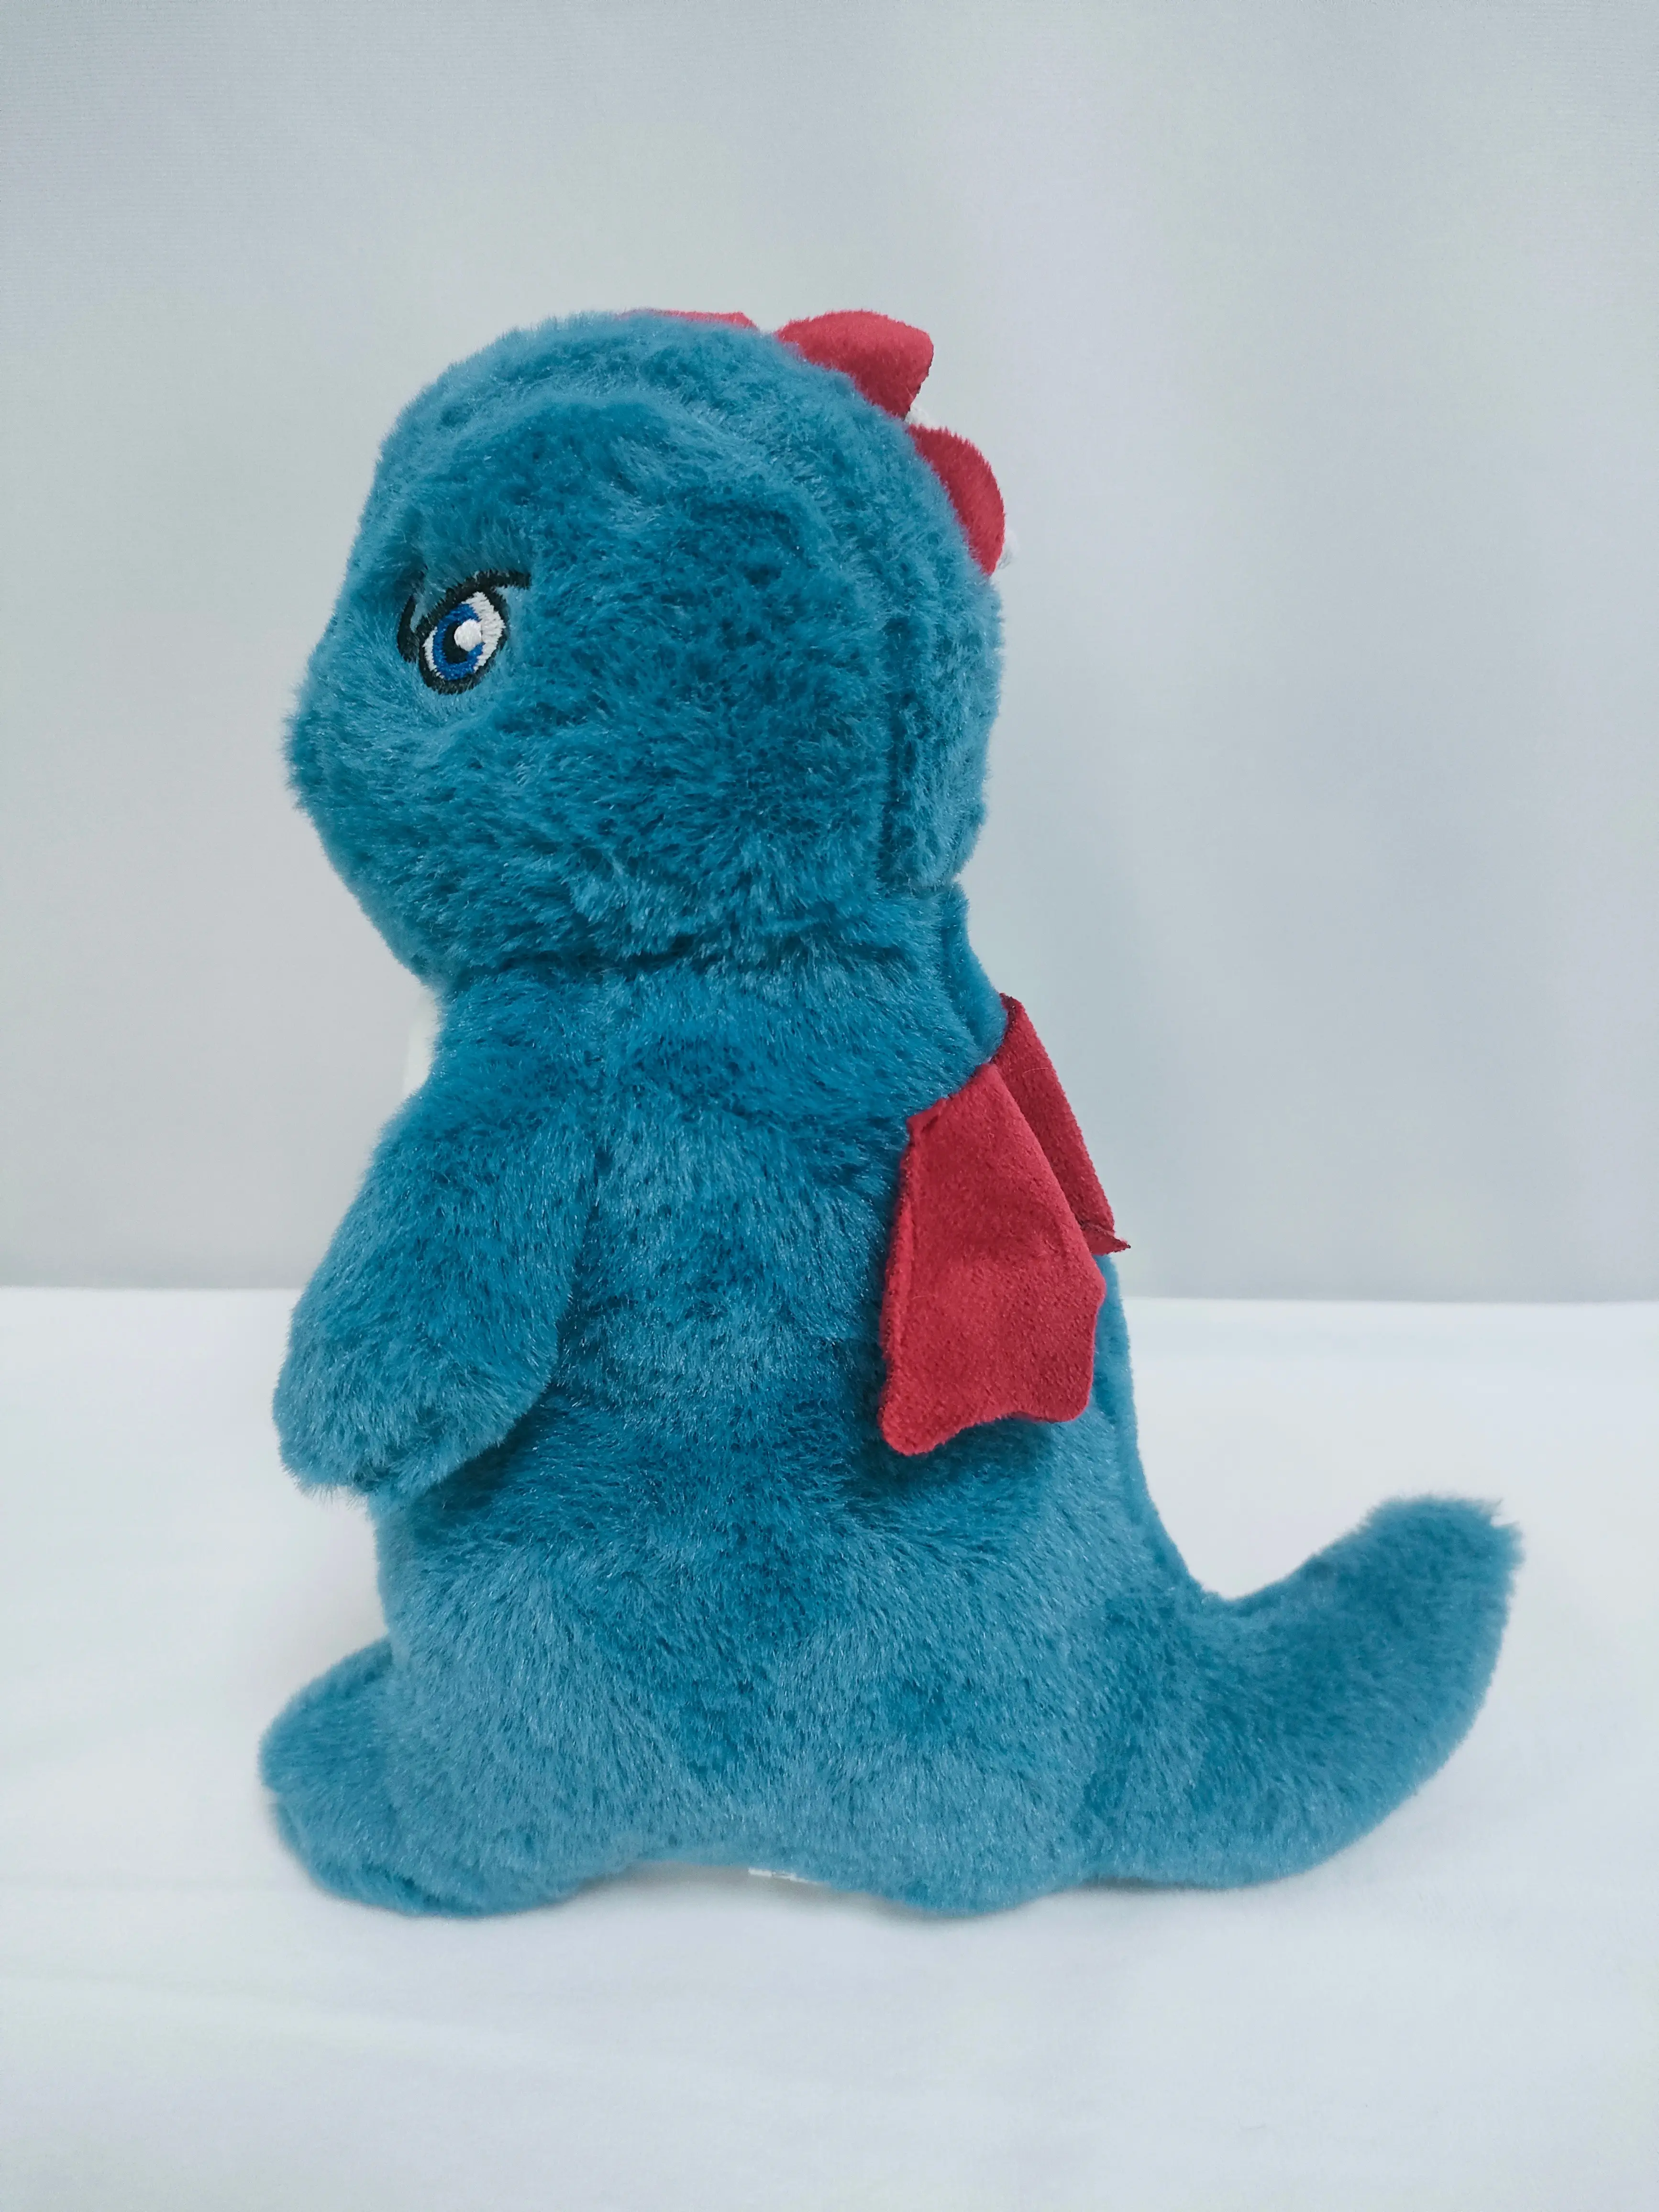 Плюшевый динозавр плюшевая игрушка супер мягкая игрушка для детей подарок